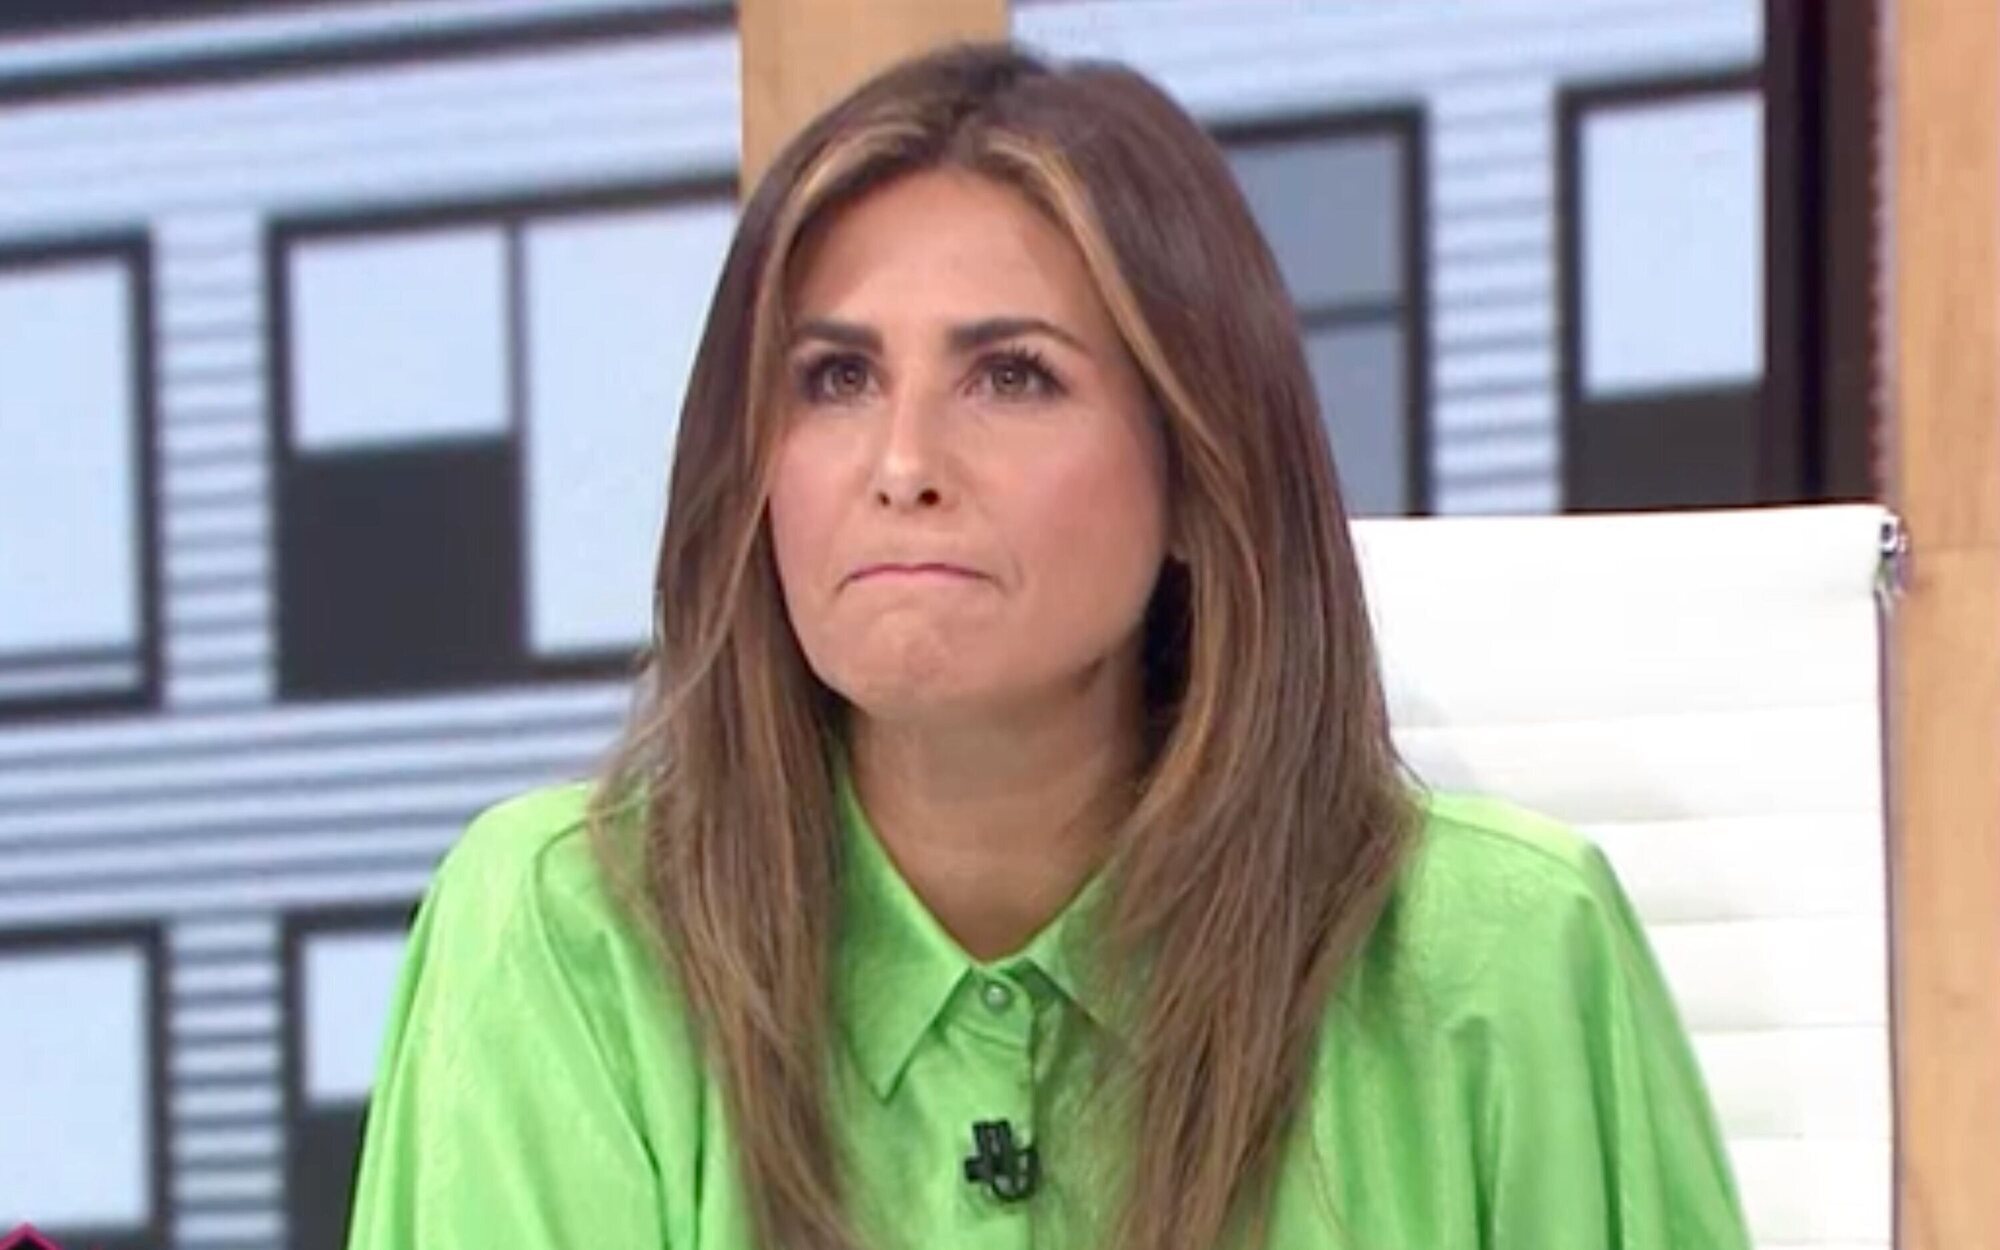 Nuria Roca recuerda su peor experiencia laboral: "Me hacían bullying, lo pasé regular"